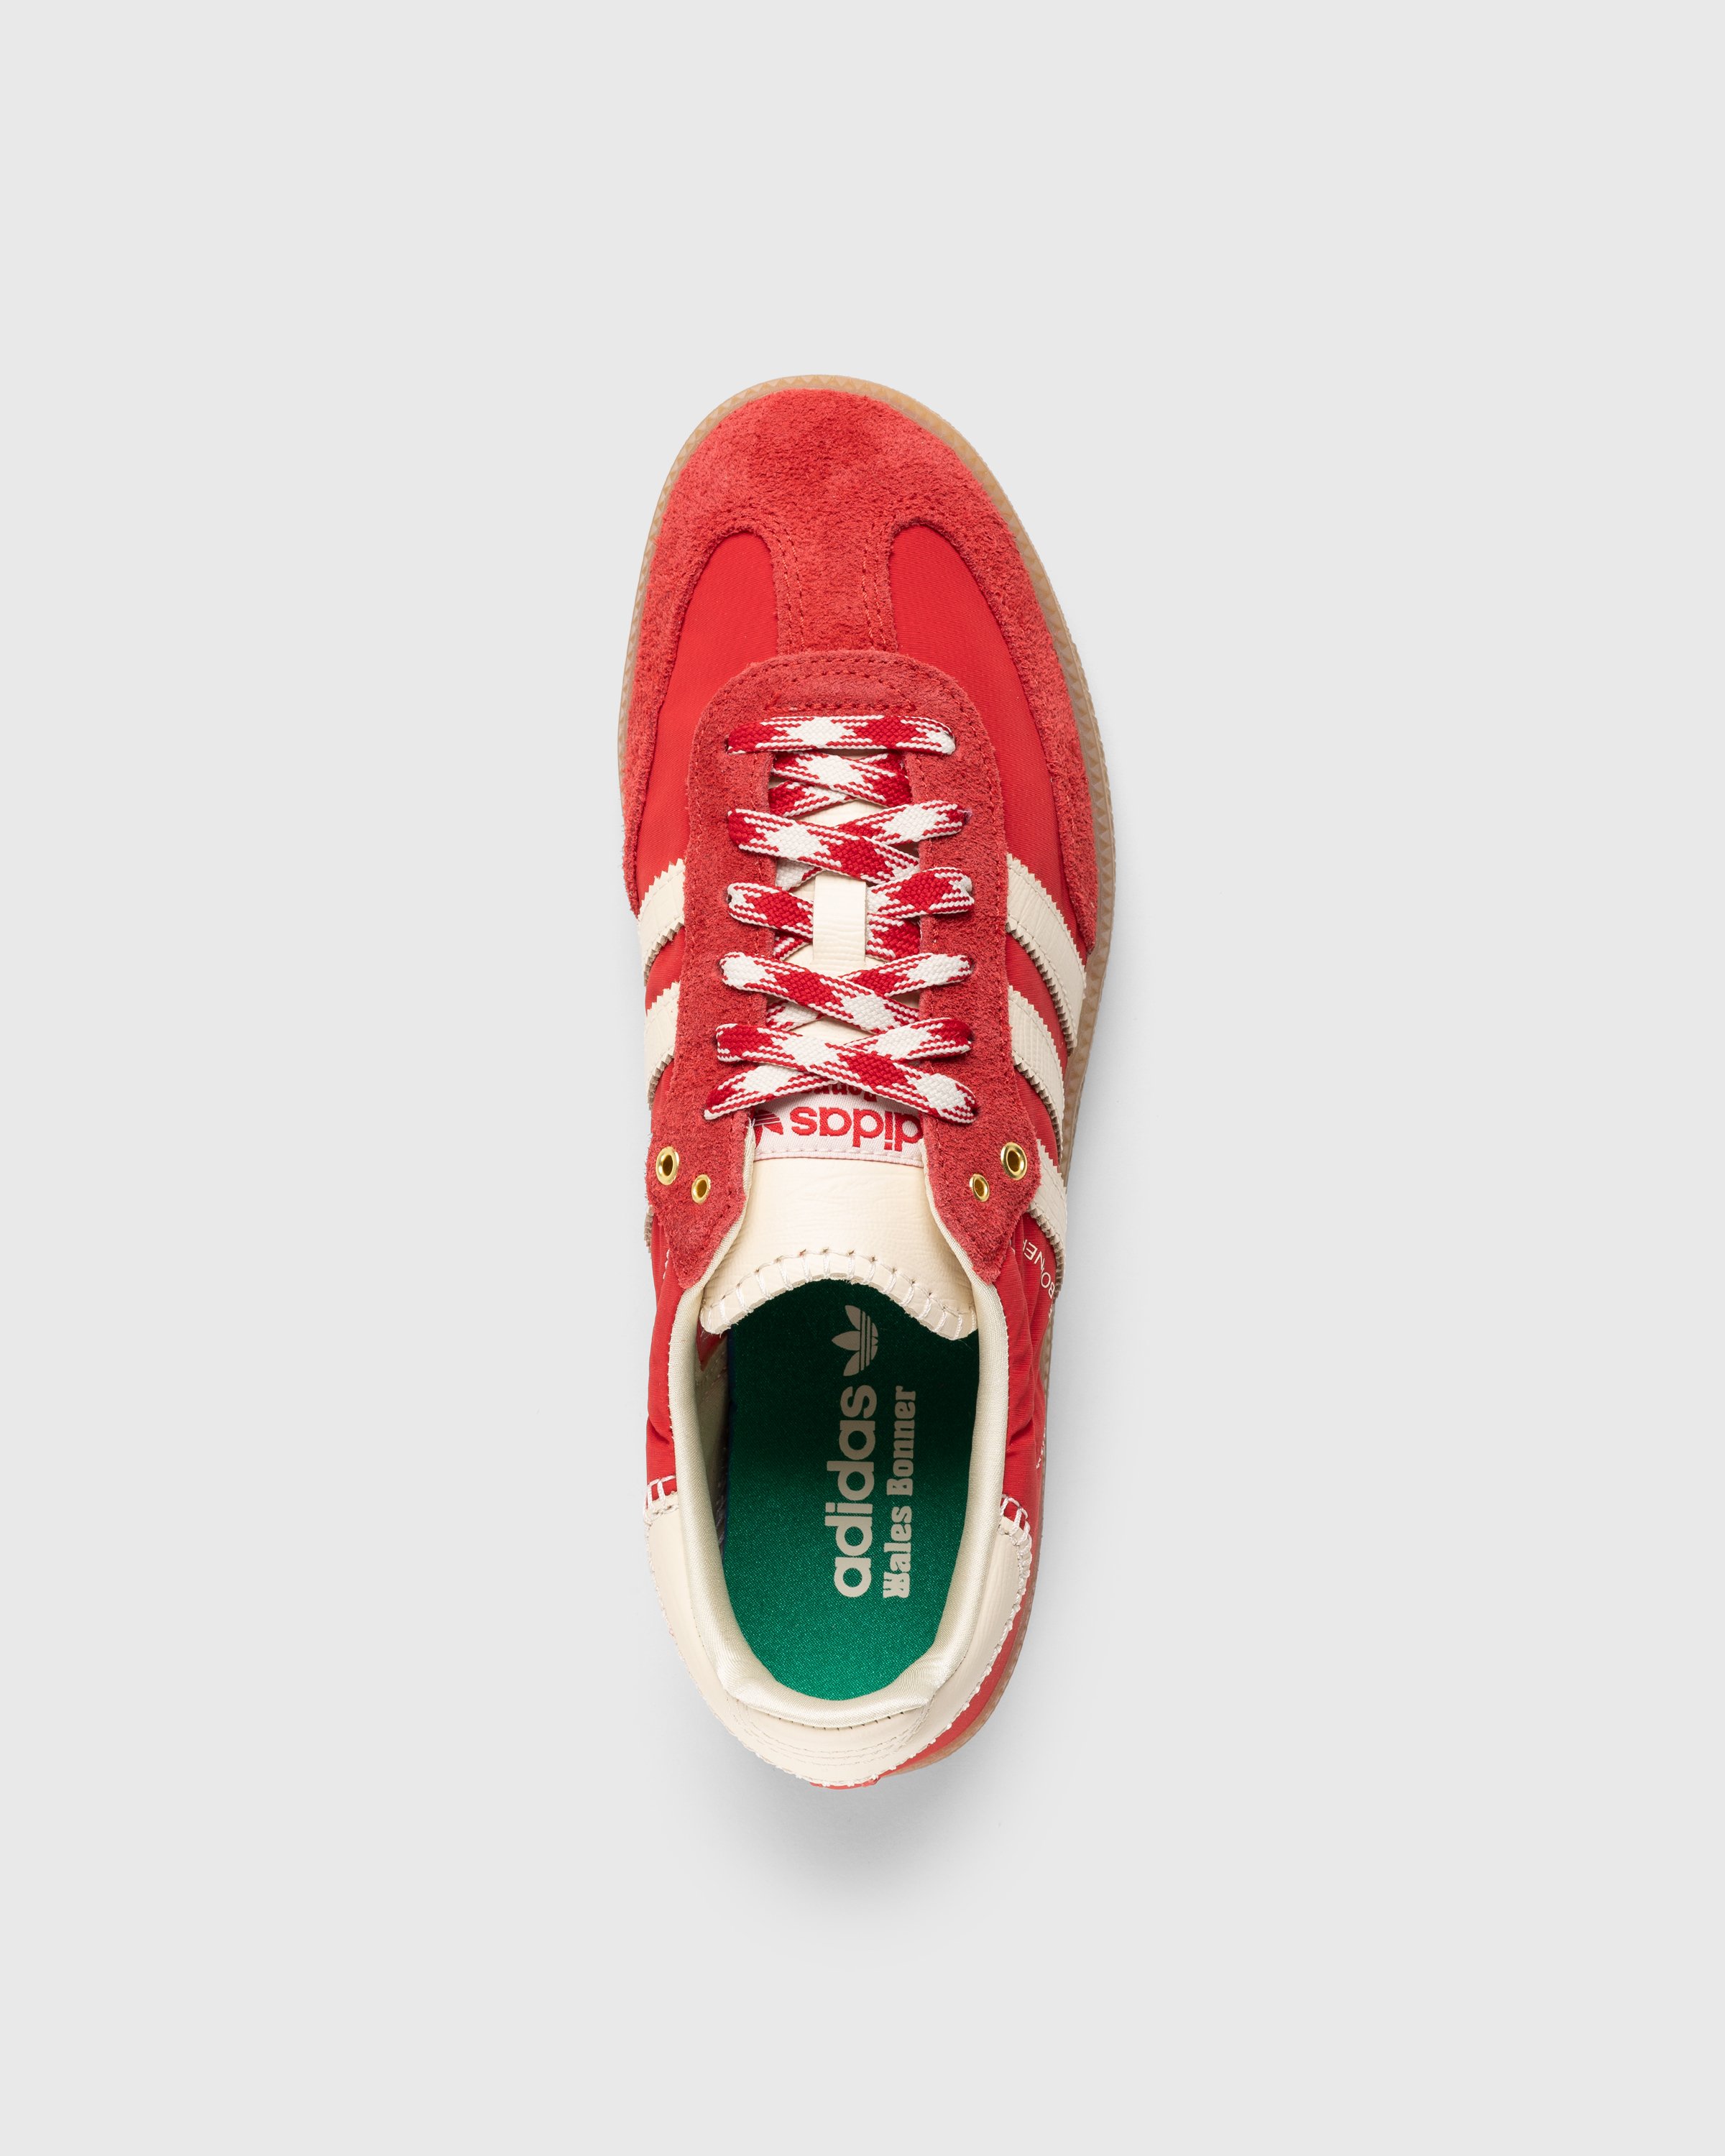 Adidas x Wales Bonner - WB Samba Scarlet/Ecru Tint/Scarlet - Footwear - Red - Image 5